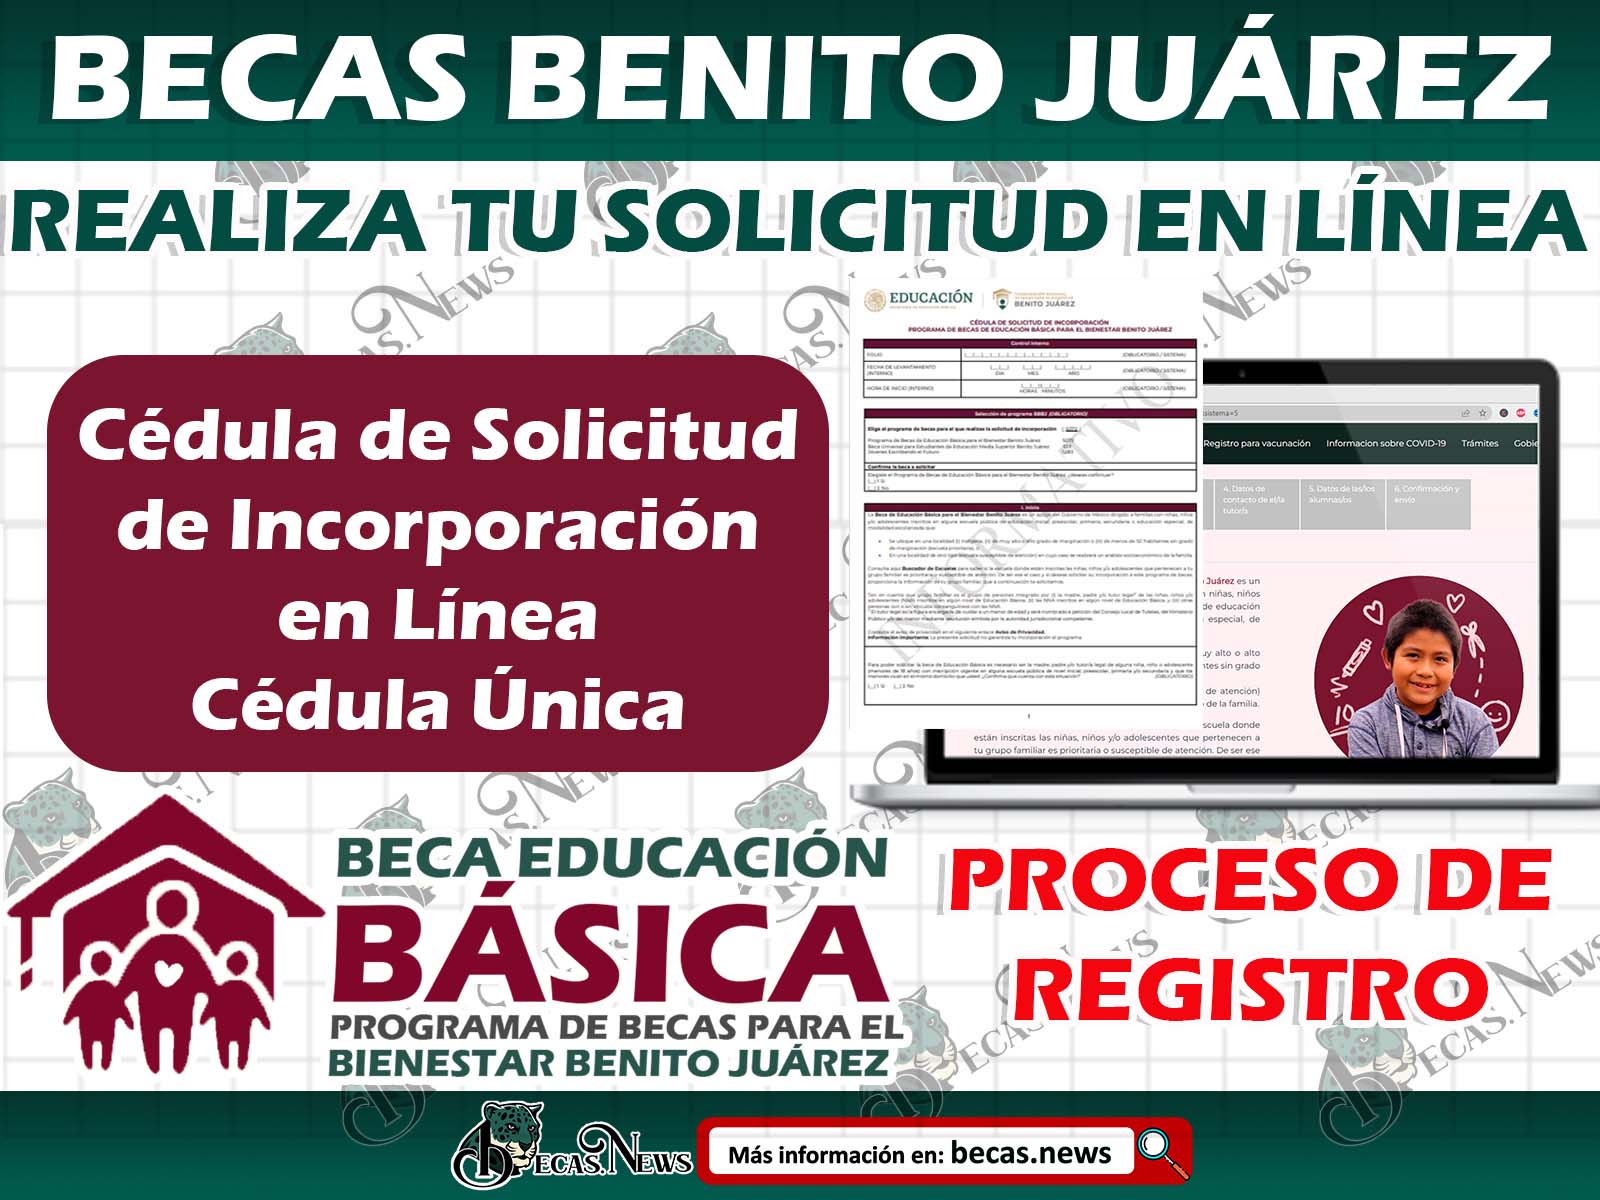 Proceso de Registro Becas Benito Juárez ¡Sigue estos sencillos paso! Cédula de Solicitud de Incorporación en Línea